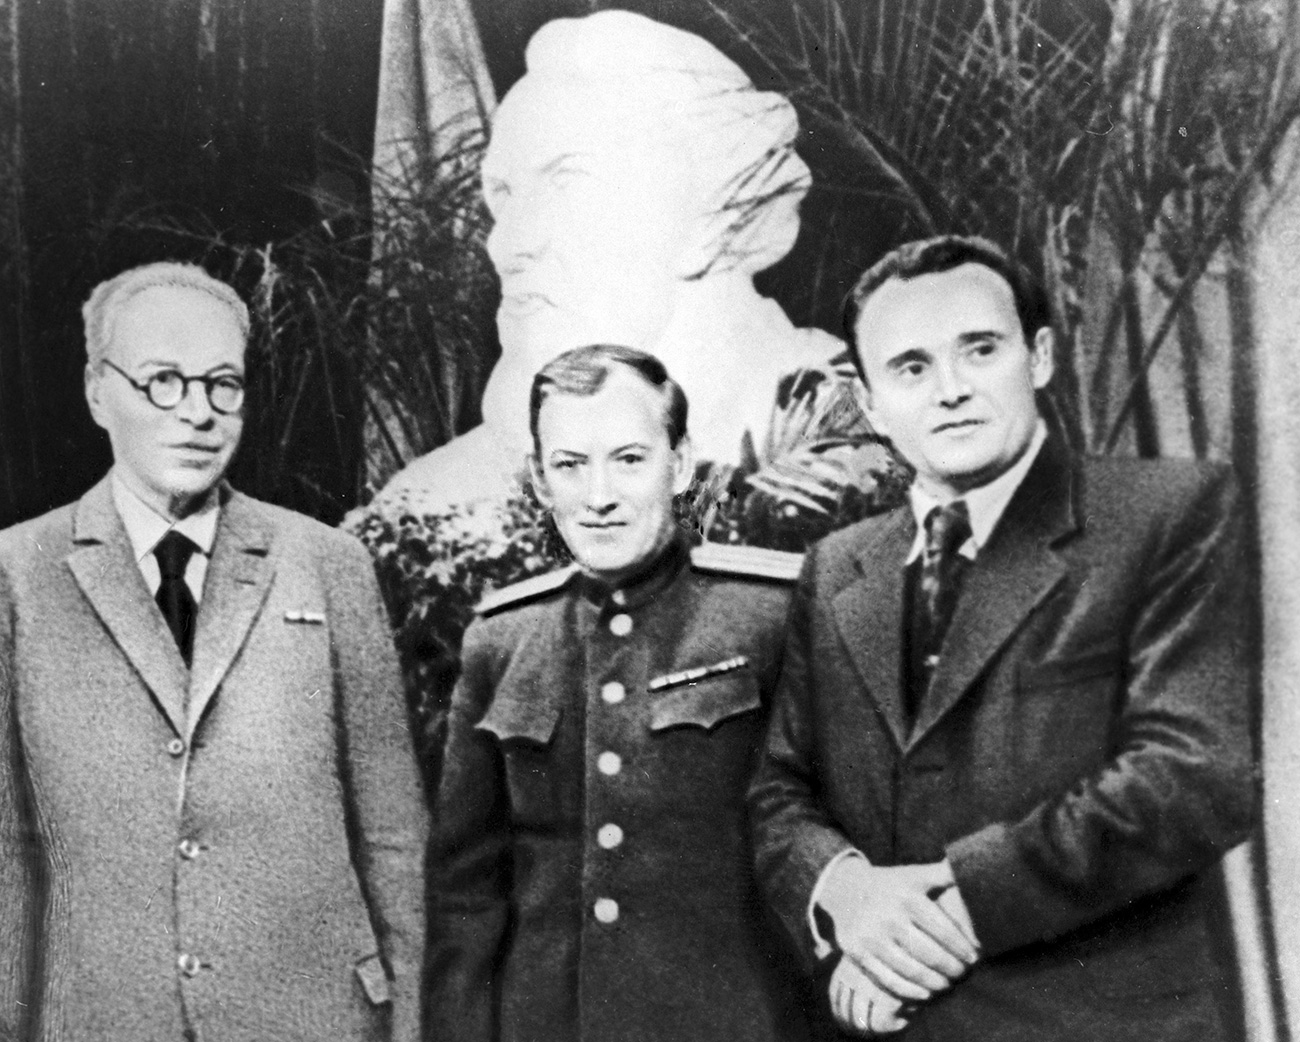 De izquierda a derecha: El académico soviético A. Blagonrávov, el creador de los primeros cohetes de combustible líquido Mijaíl Tijonrávov y el diseñador aeronáutico Serguéi Koroliov, en la celebración del 90 aniversario del nacimiento de K. Tsiolkovski, 1968. Fuente: RIA Novosti